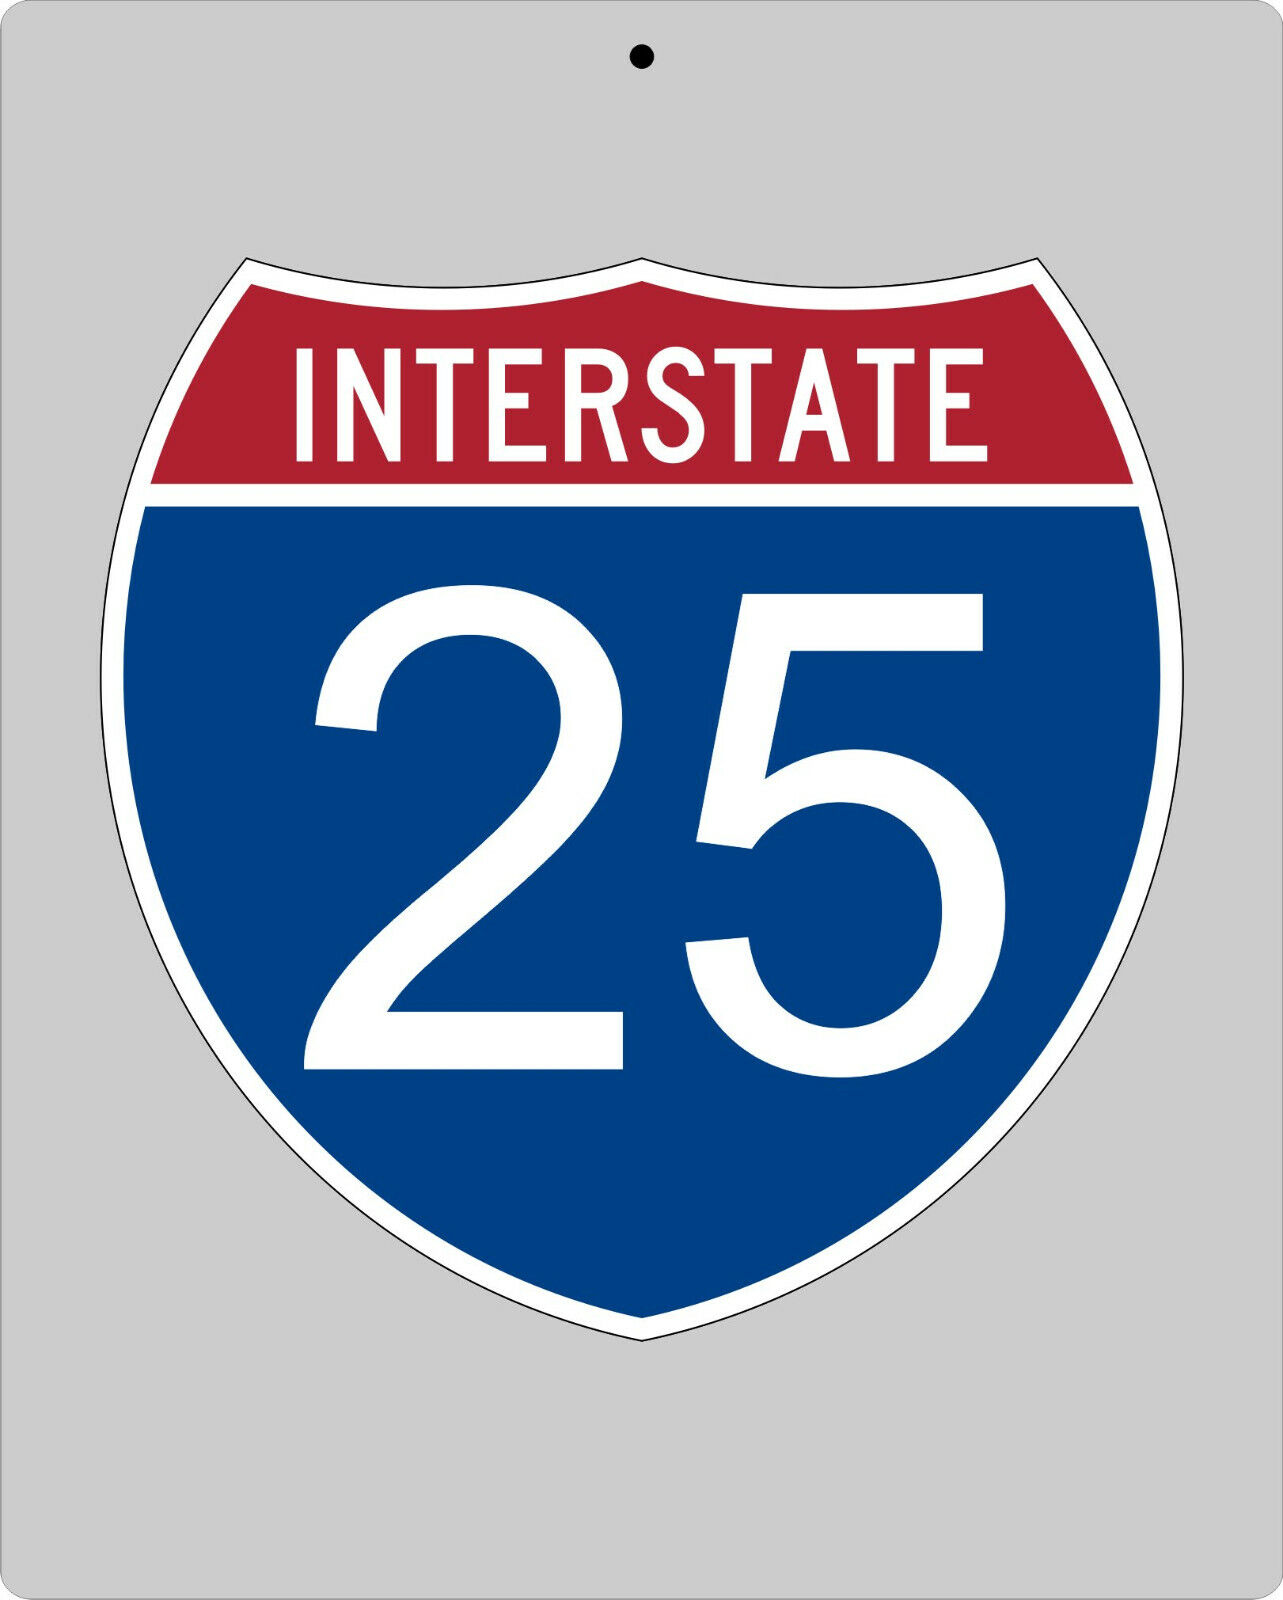 I-25 metal Interstate highway sign - Alburquerque to Denver to Cheyenne